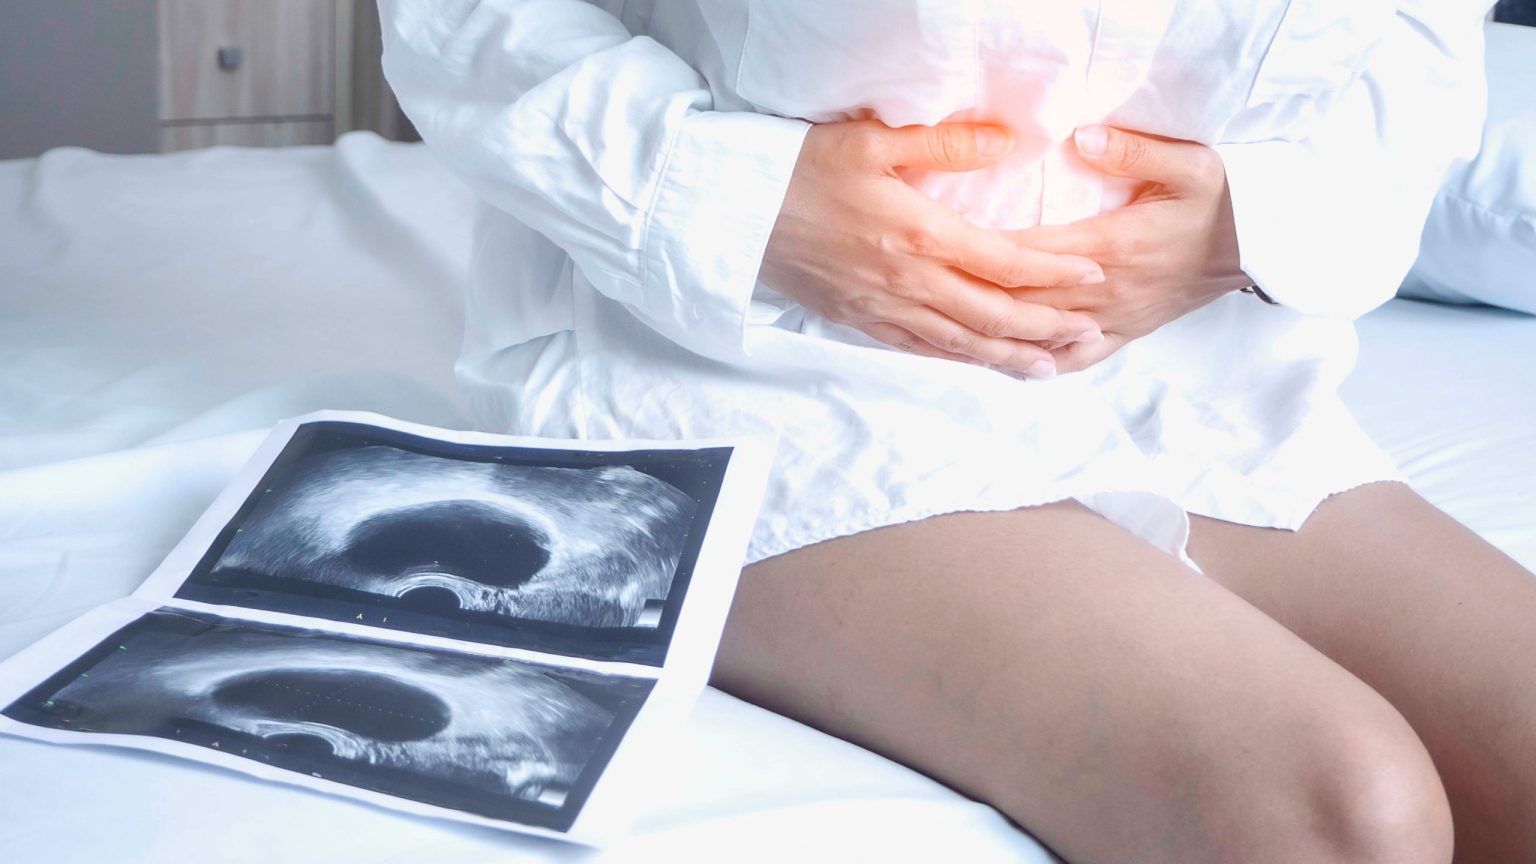 Πάρκινσον: Αυξημένος ο κίνδυνος εμφάνισης με την αφαίρεση ωοθηκών πριν την εμμηνόπαυση